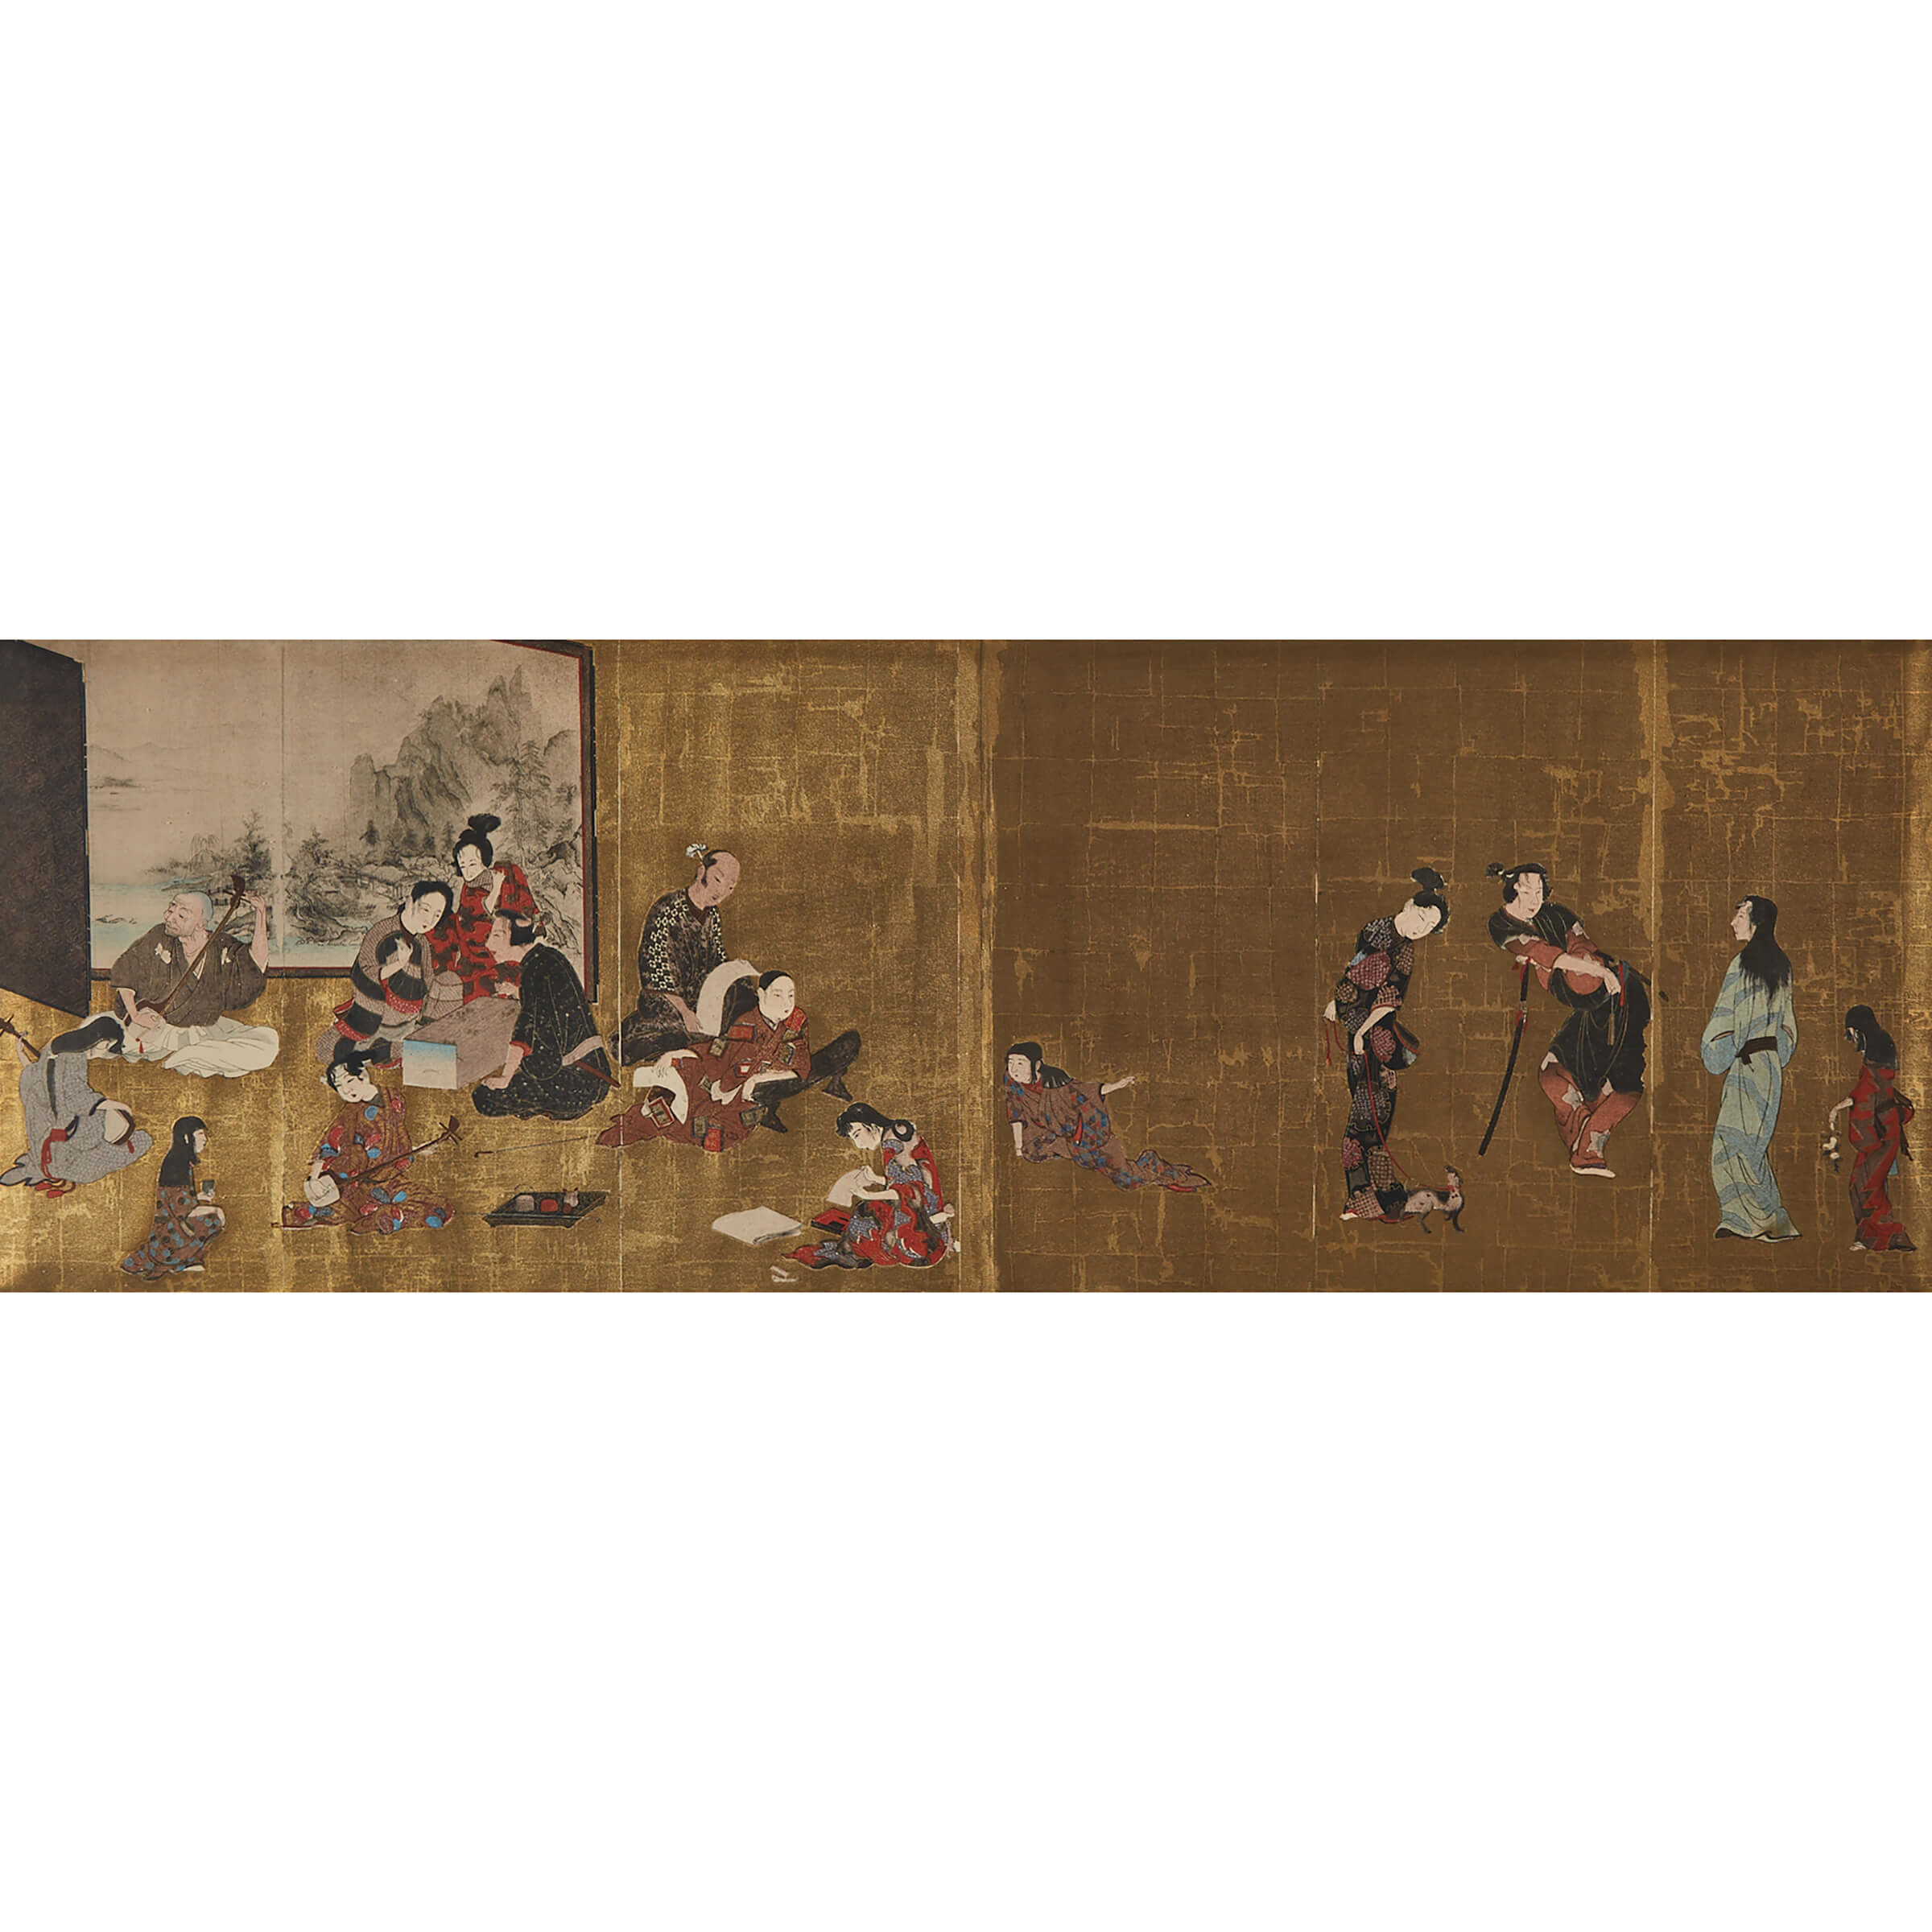 After the Hikone Byobu Screen (1624-1644)